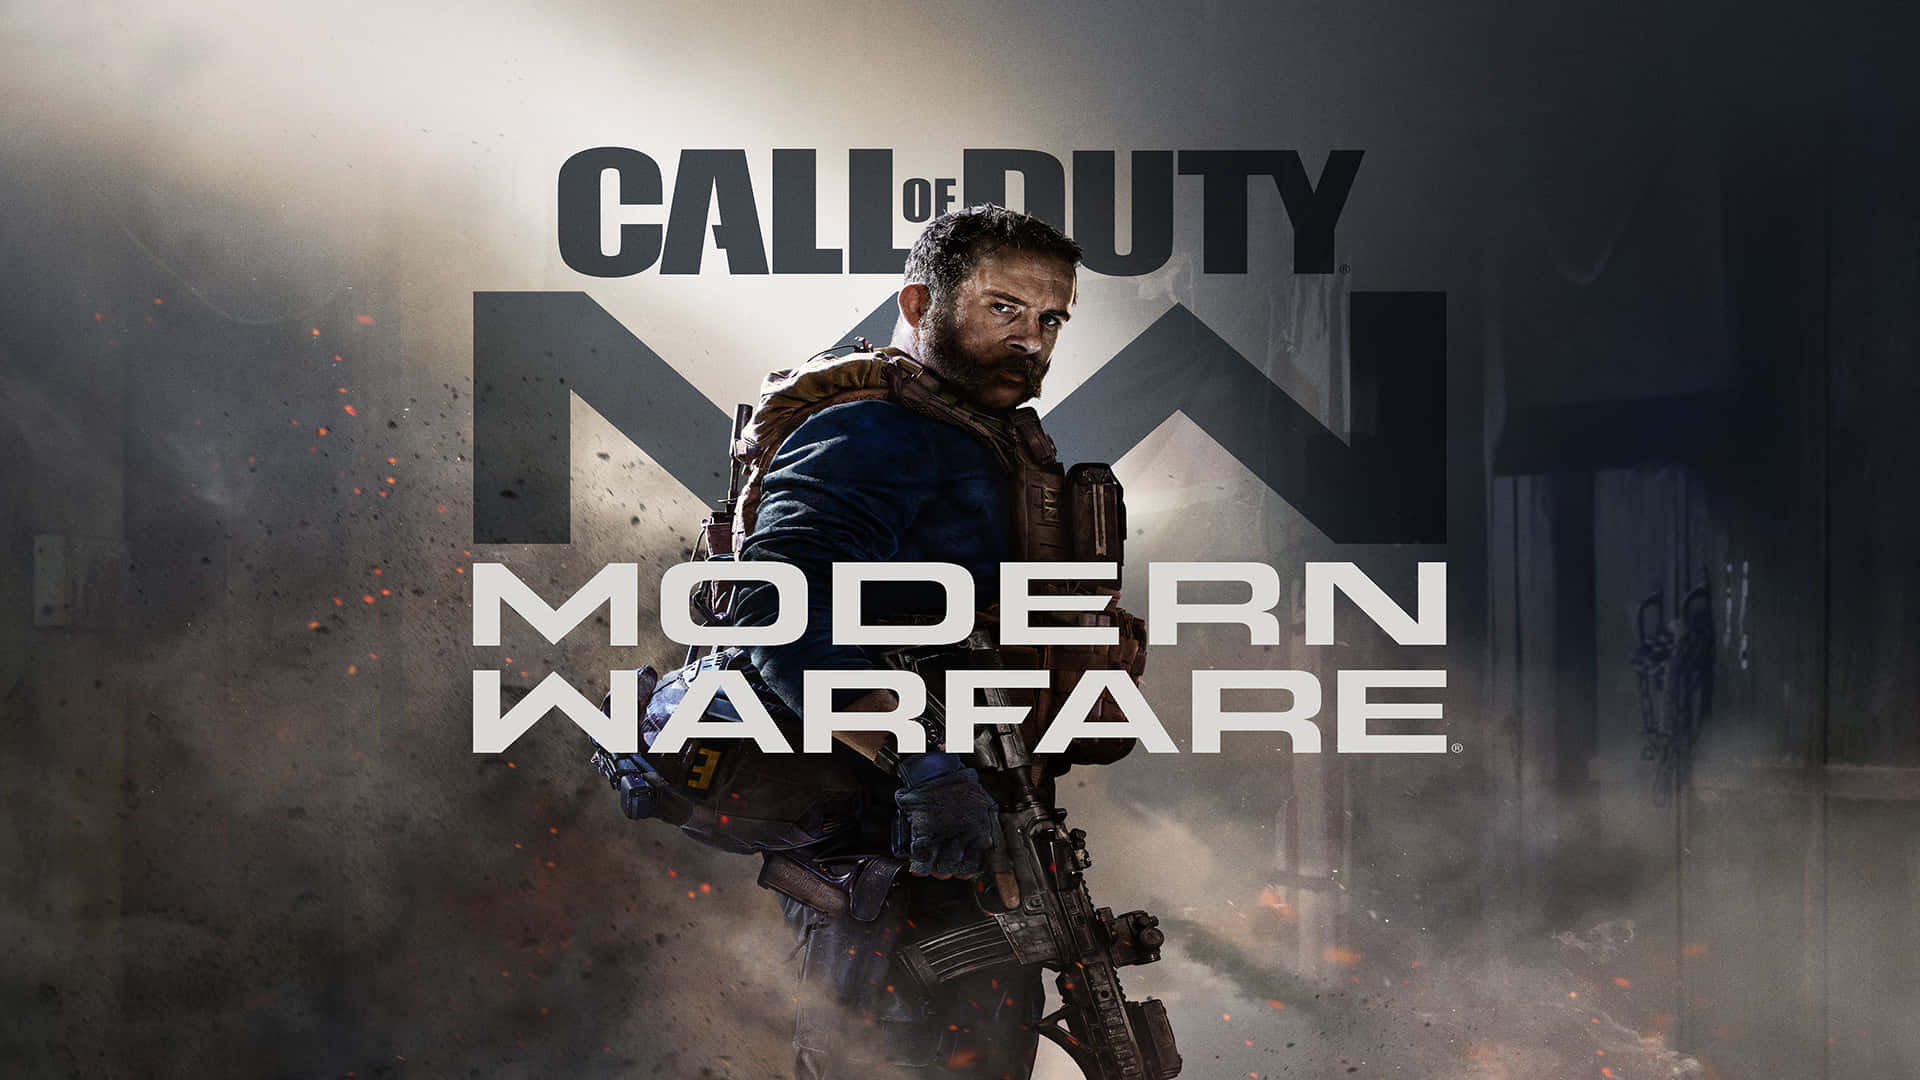 Prepare for intense combat in ‘Call of Duty Modern Warfare’